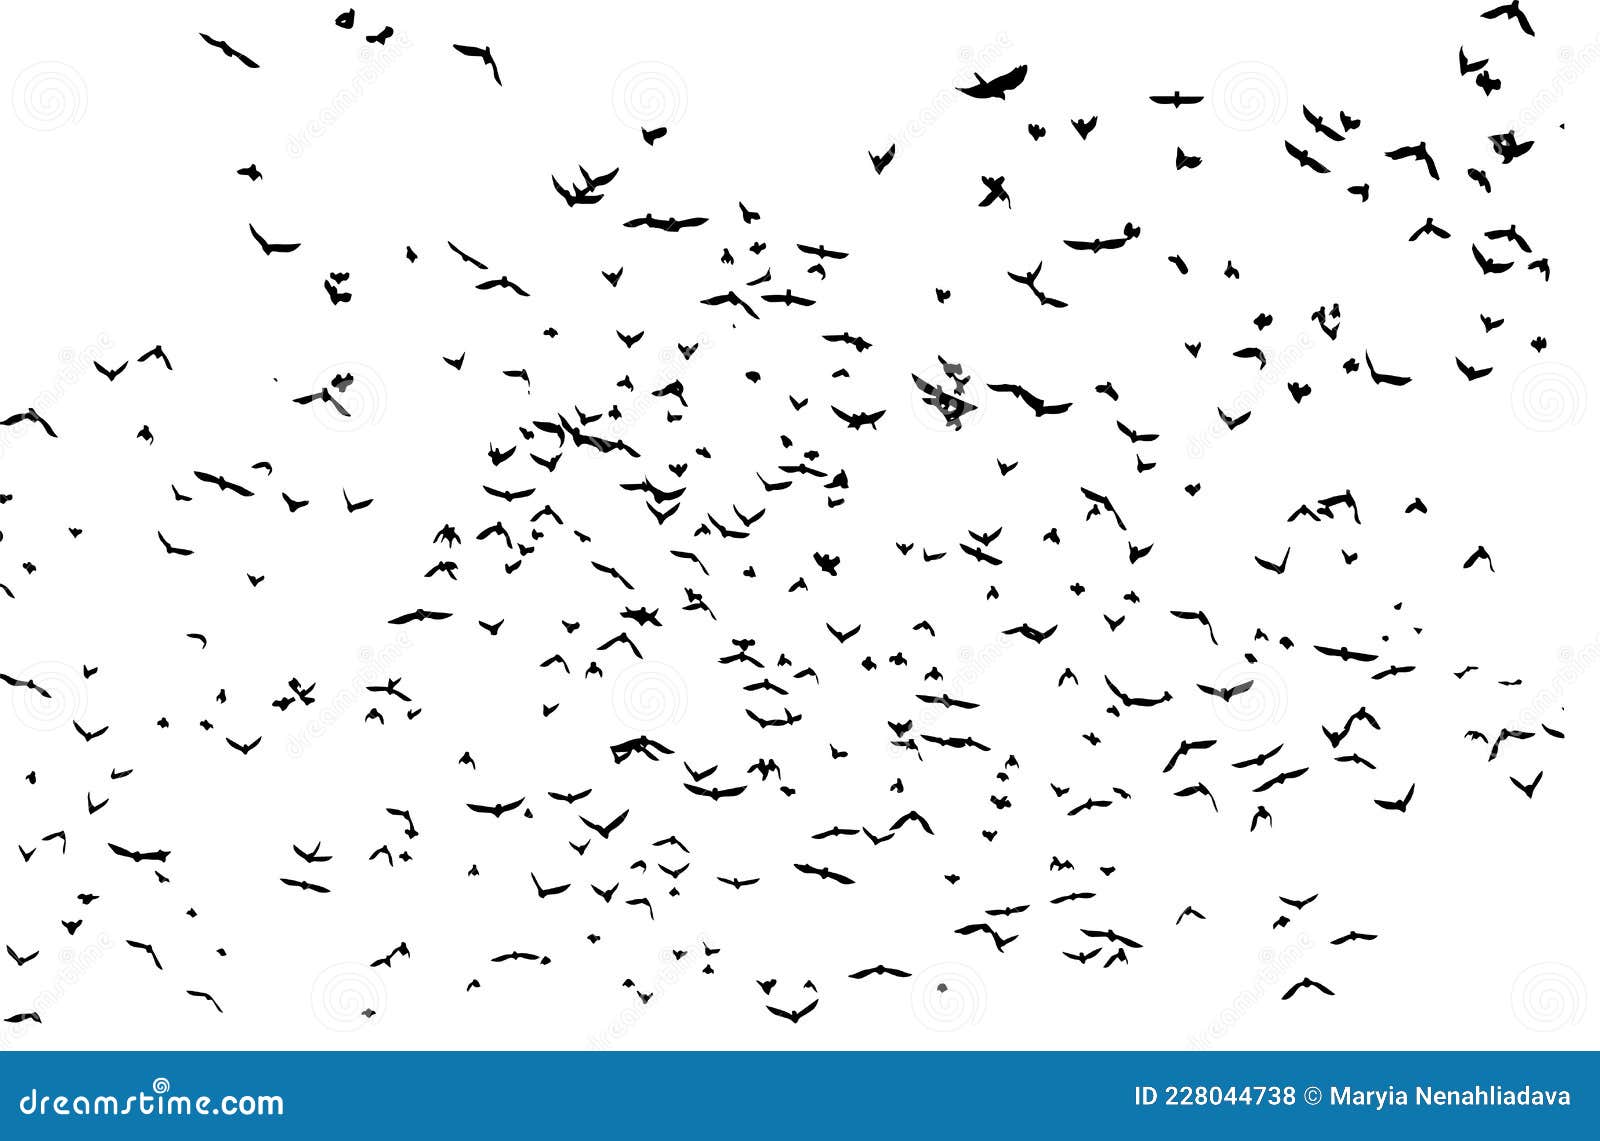 A Flock of Flying Birds. Vector Illustration Stock Vector ...